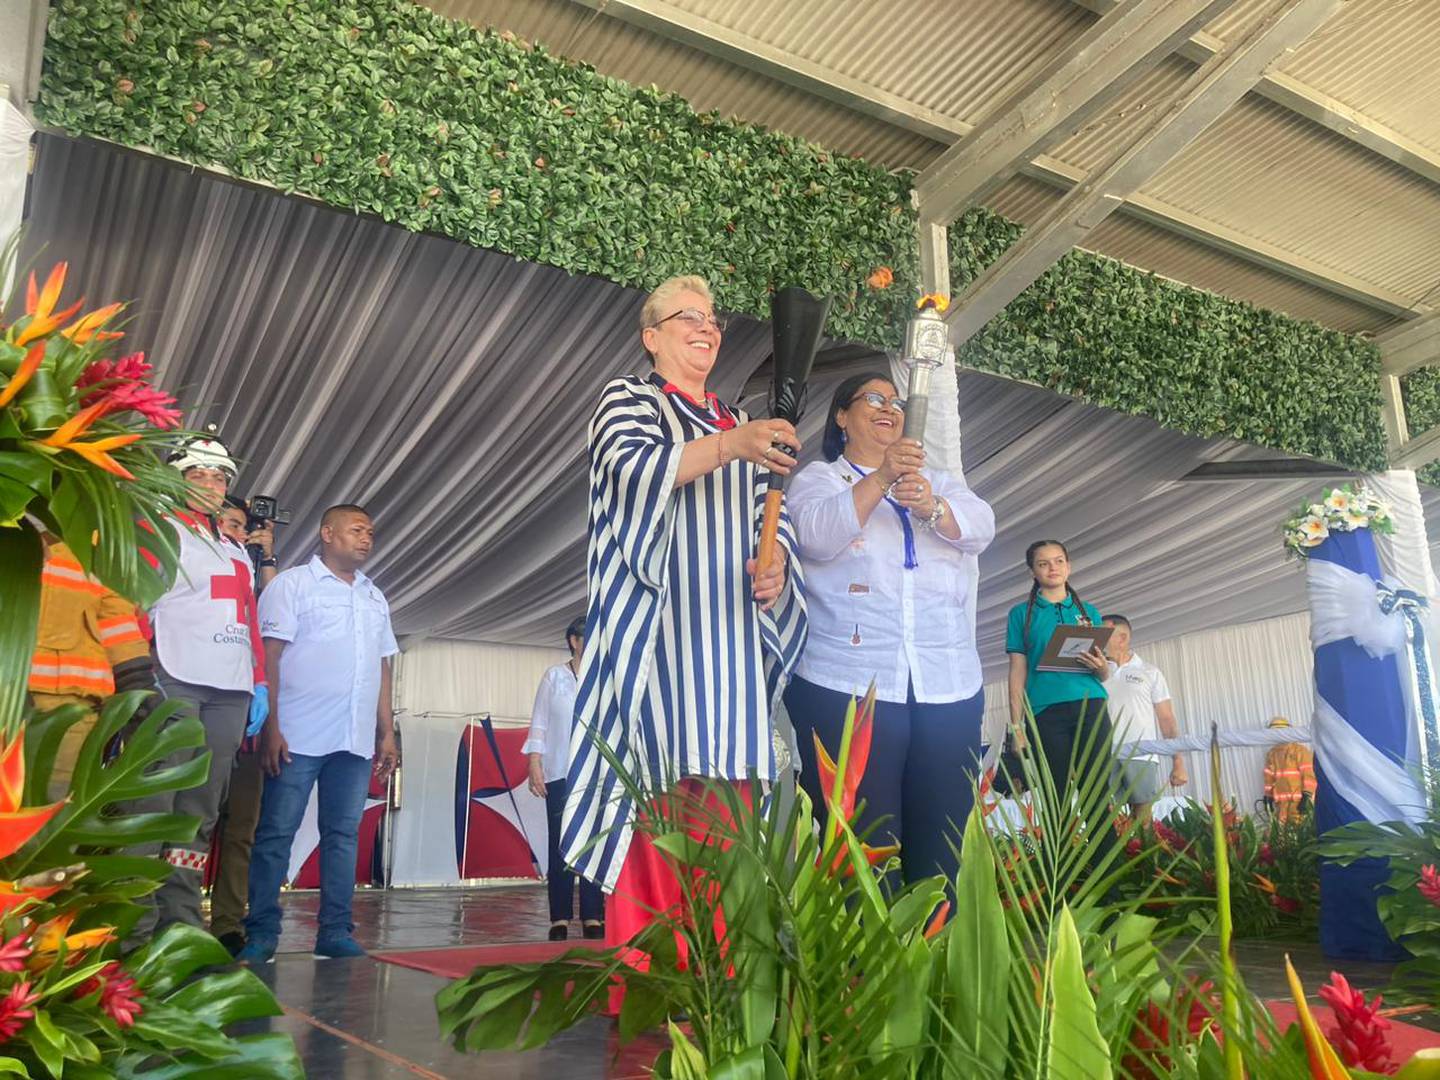 La Ministra de educación Anna Katharina Müller Castro entregó la antorcha a Angélica Guevara Obando, estudiante de octavo año del Liceo Nocturno La Cruz, en Guanacaste.